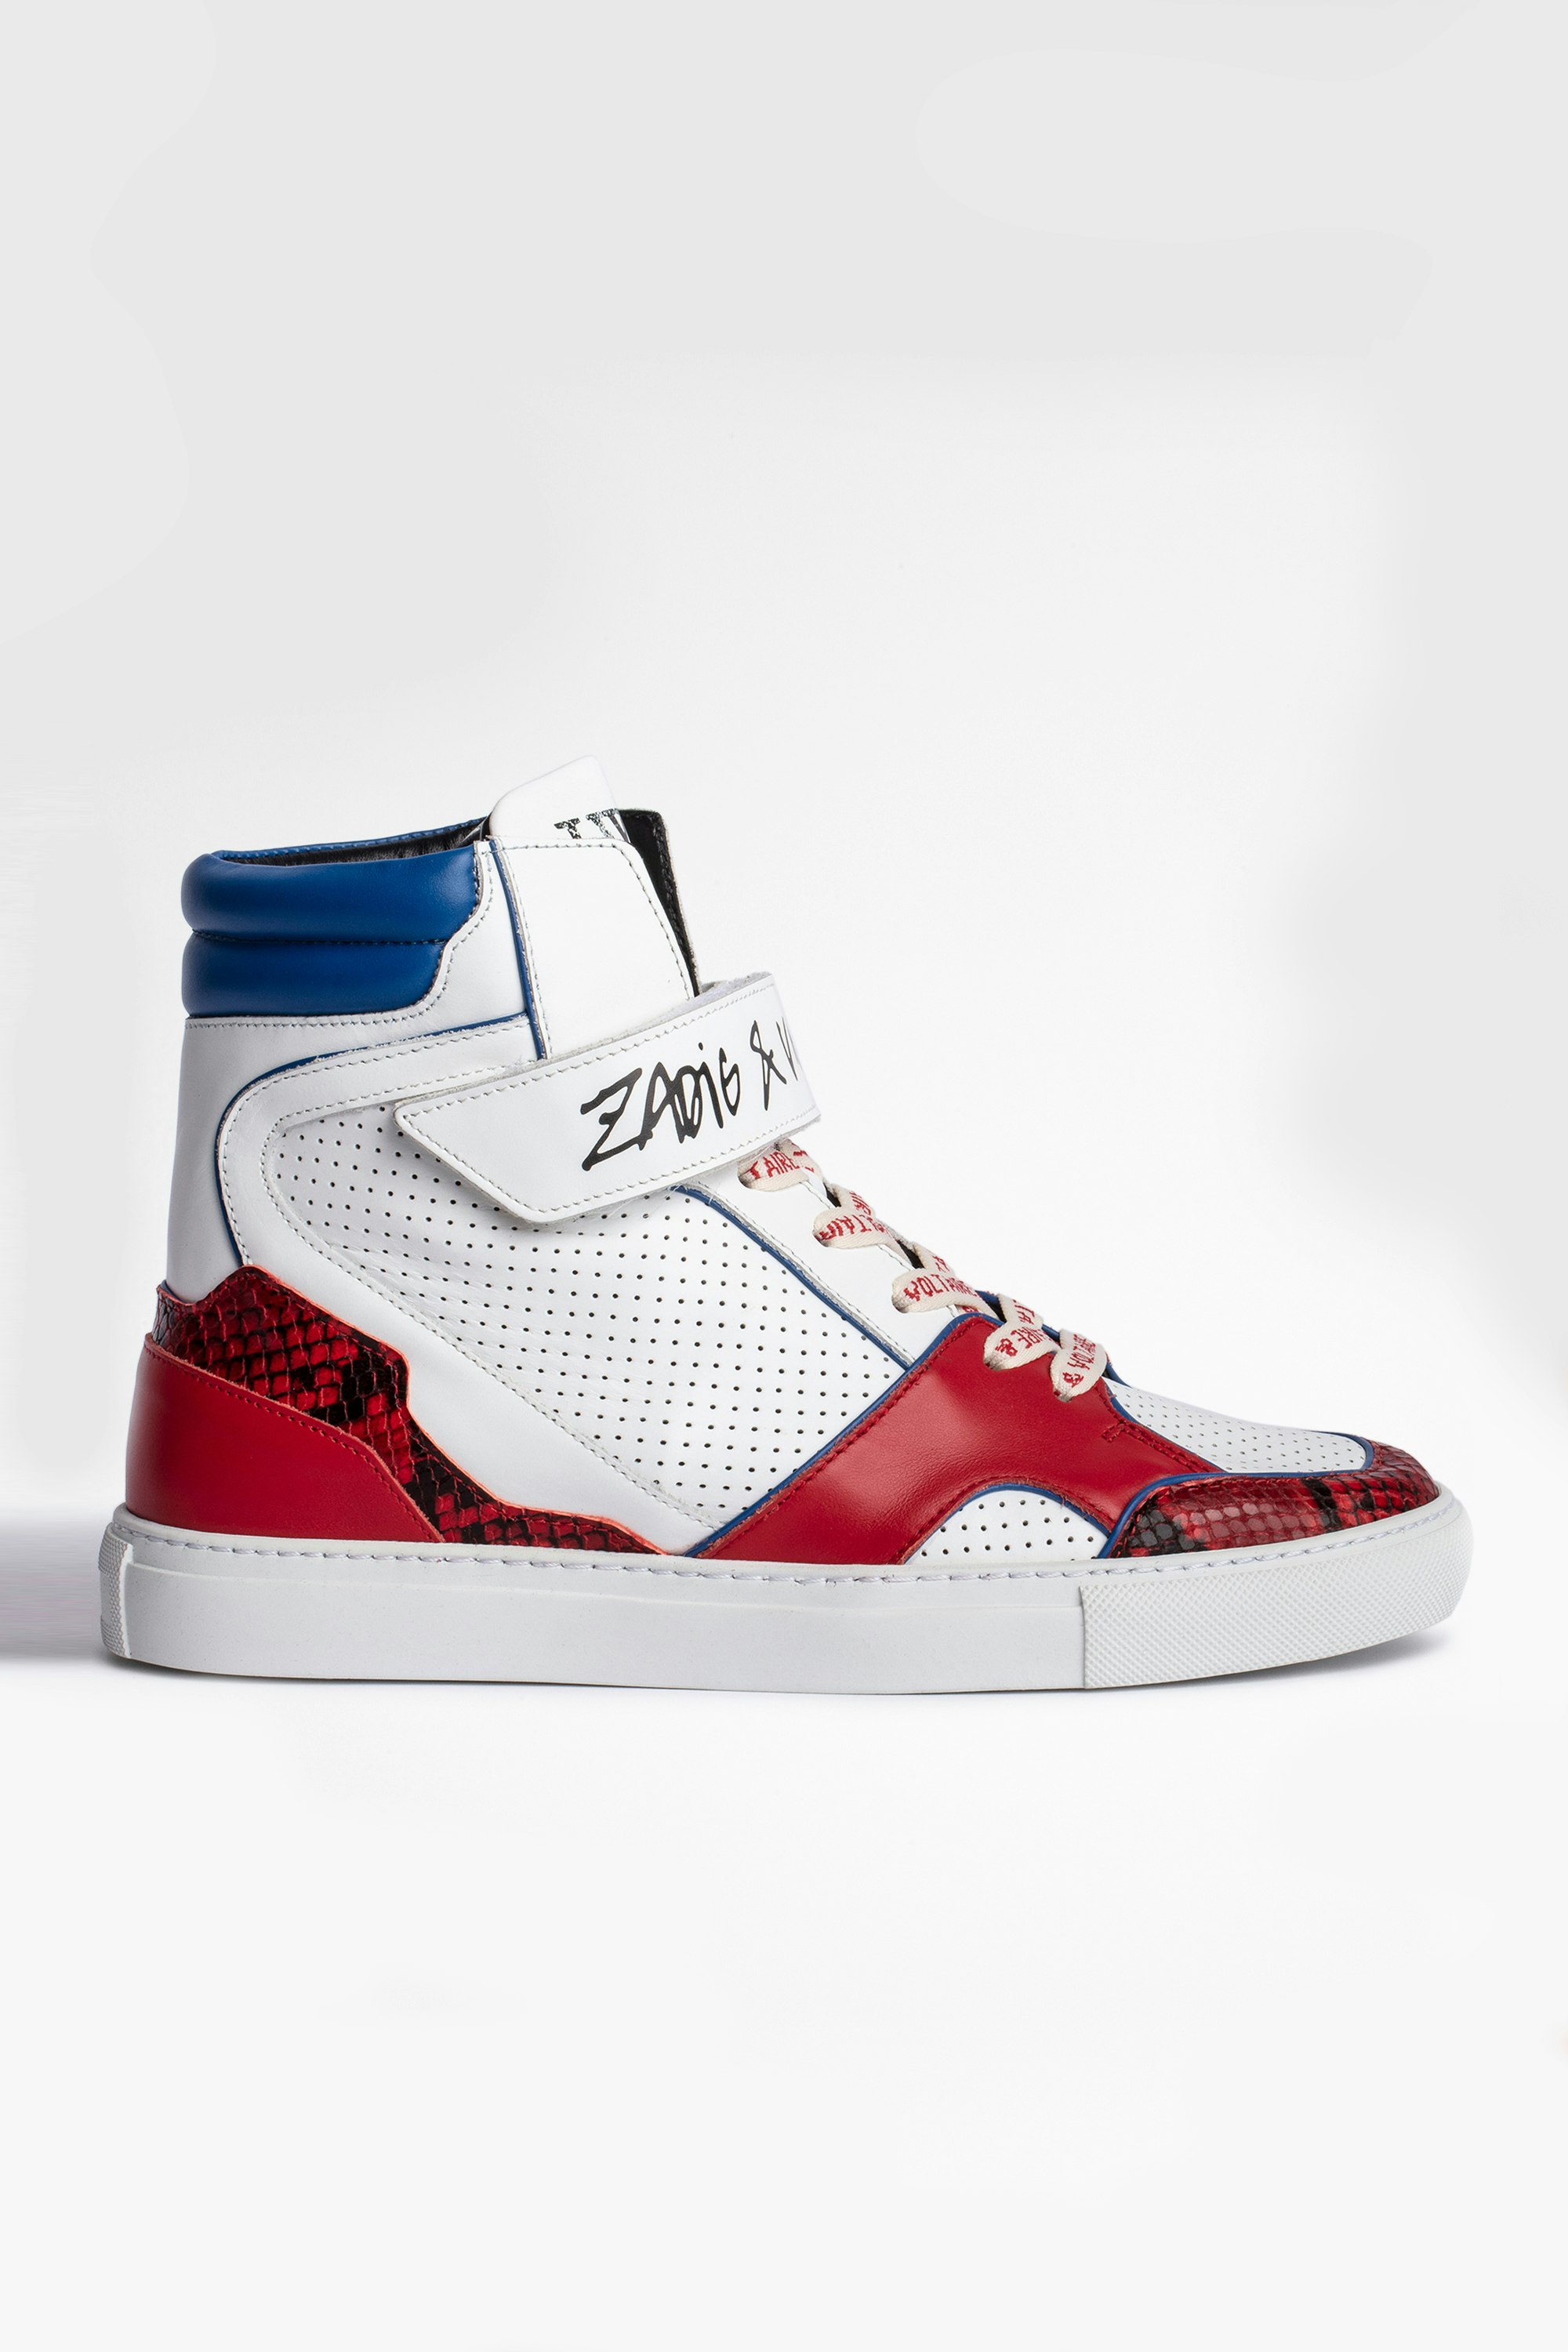 Sneakers ZV1747 High Flash Sneakers alte in pelle tricolore, donna. Acquistando questo prodotto, sostieni la produzione responsabile della pelle attraverso il Leather Working Group